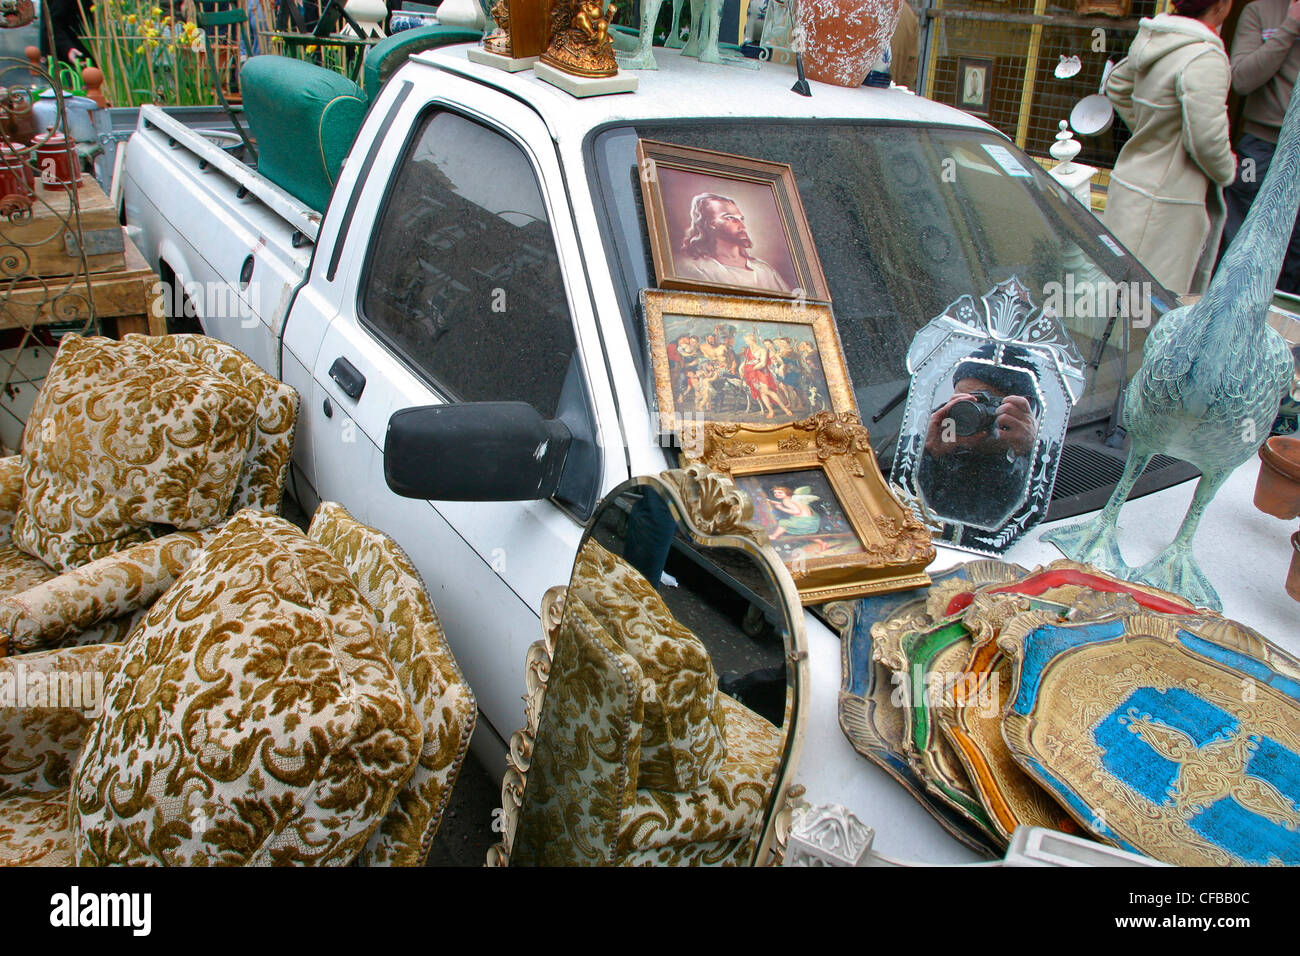 White van in der Mitte eine Columbia Road Market, London mit Stühle, Spiegel und religiöse Gemälde und Umgebung Stockfoto